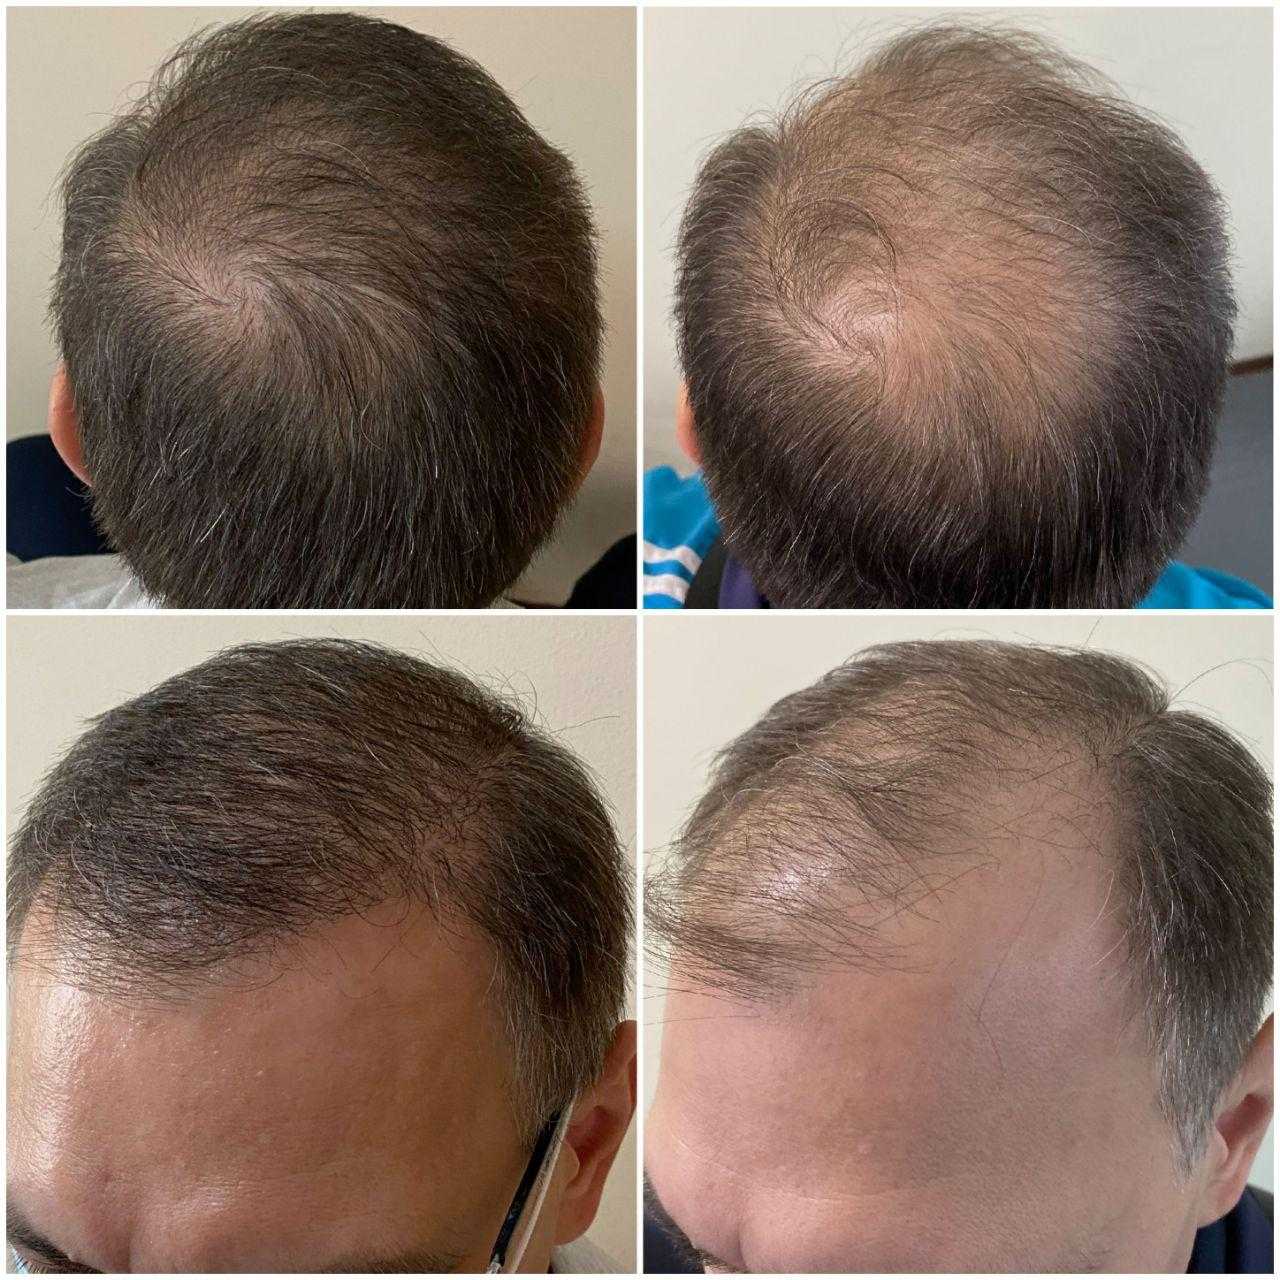 Пересадка волос екатеринбург. Графт трансплантация волос. Пересадка волос до и после. Трансплантация волос методом fue.